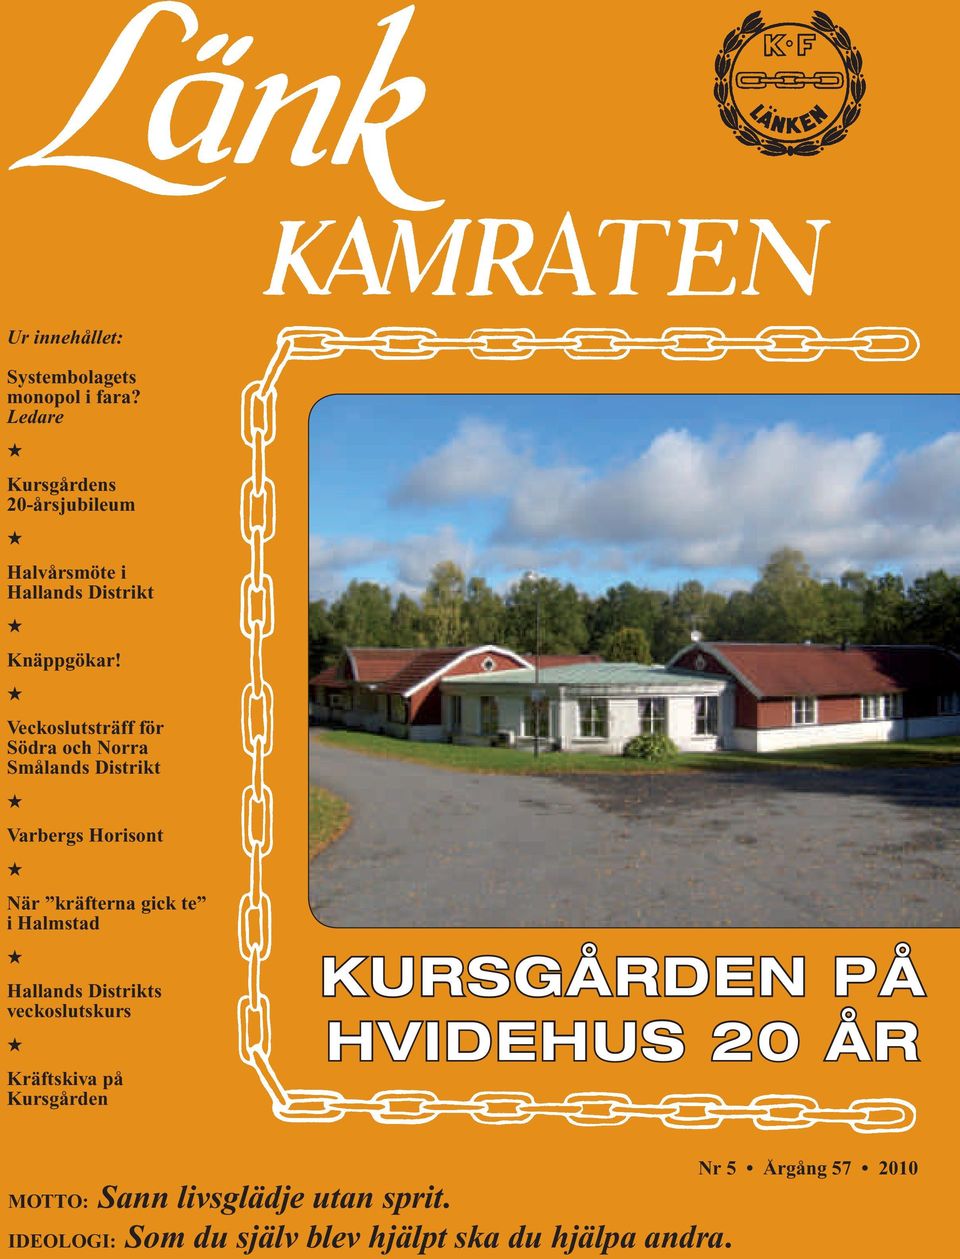 Veckoslutsträff för Södra och Norra Smålands Distrikt Varbergs Horisont När kräfterna gick te i Halmstad